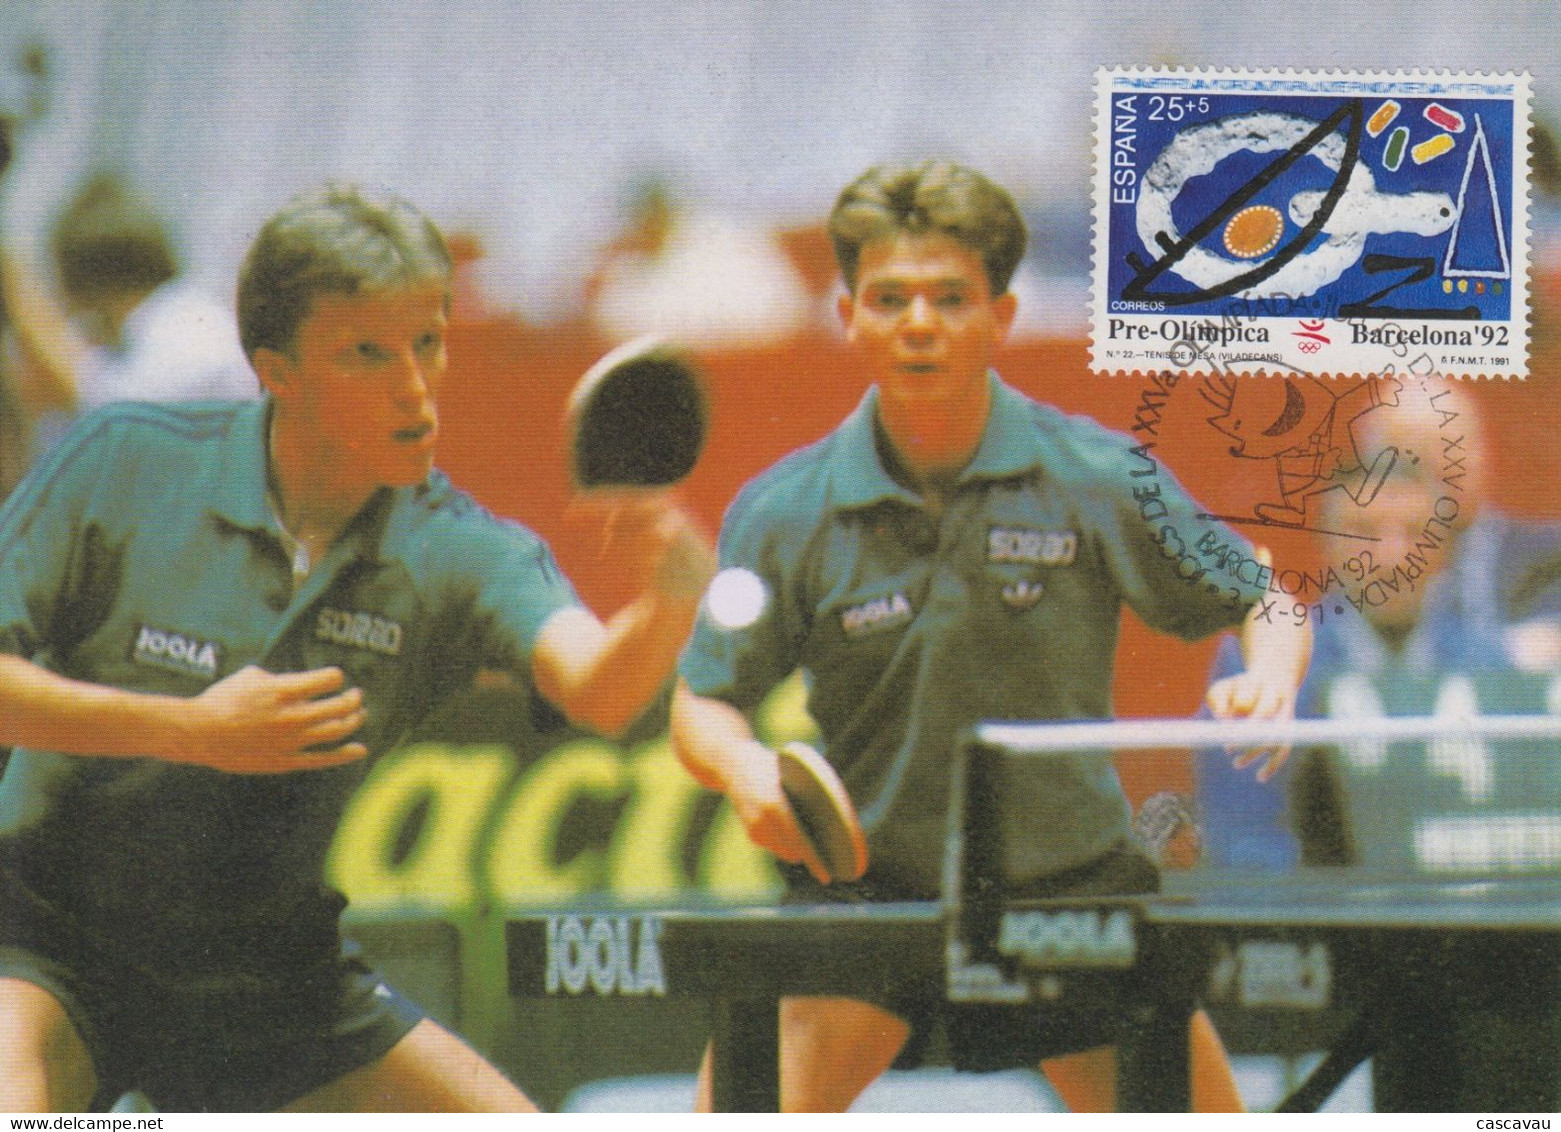 Carte  Maximum  1er  Jour   ESPAGNE   Tennis  De   Table   Série  Préolympique    JEUX  OLYMPIQUES  BARCELONE  1991 - Tischtennis